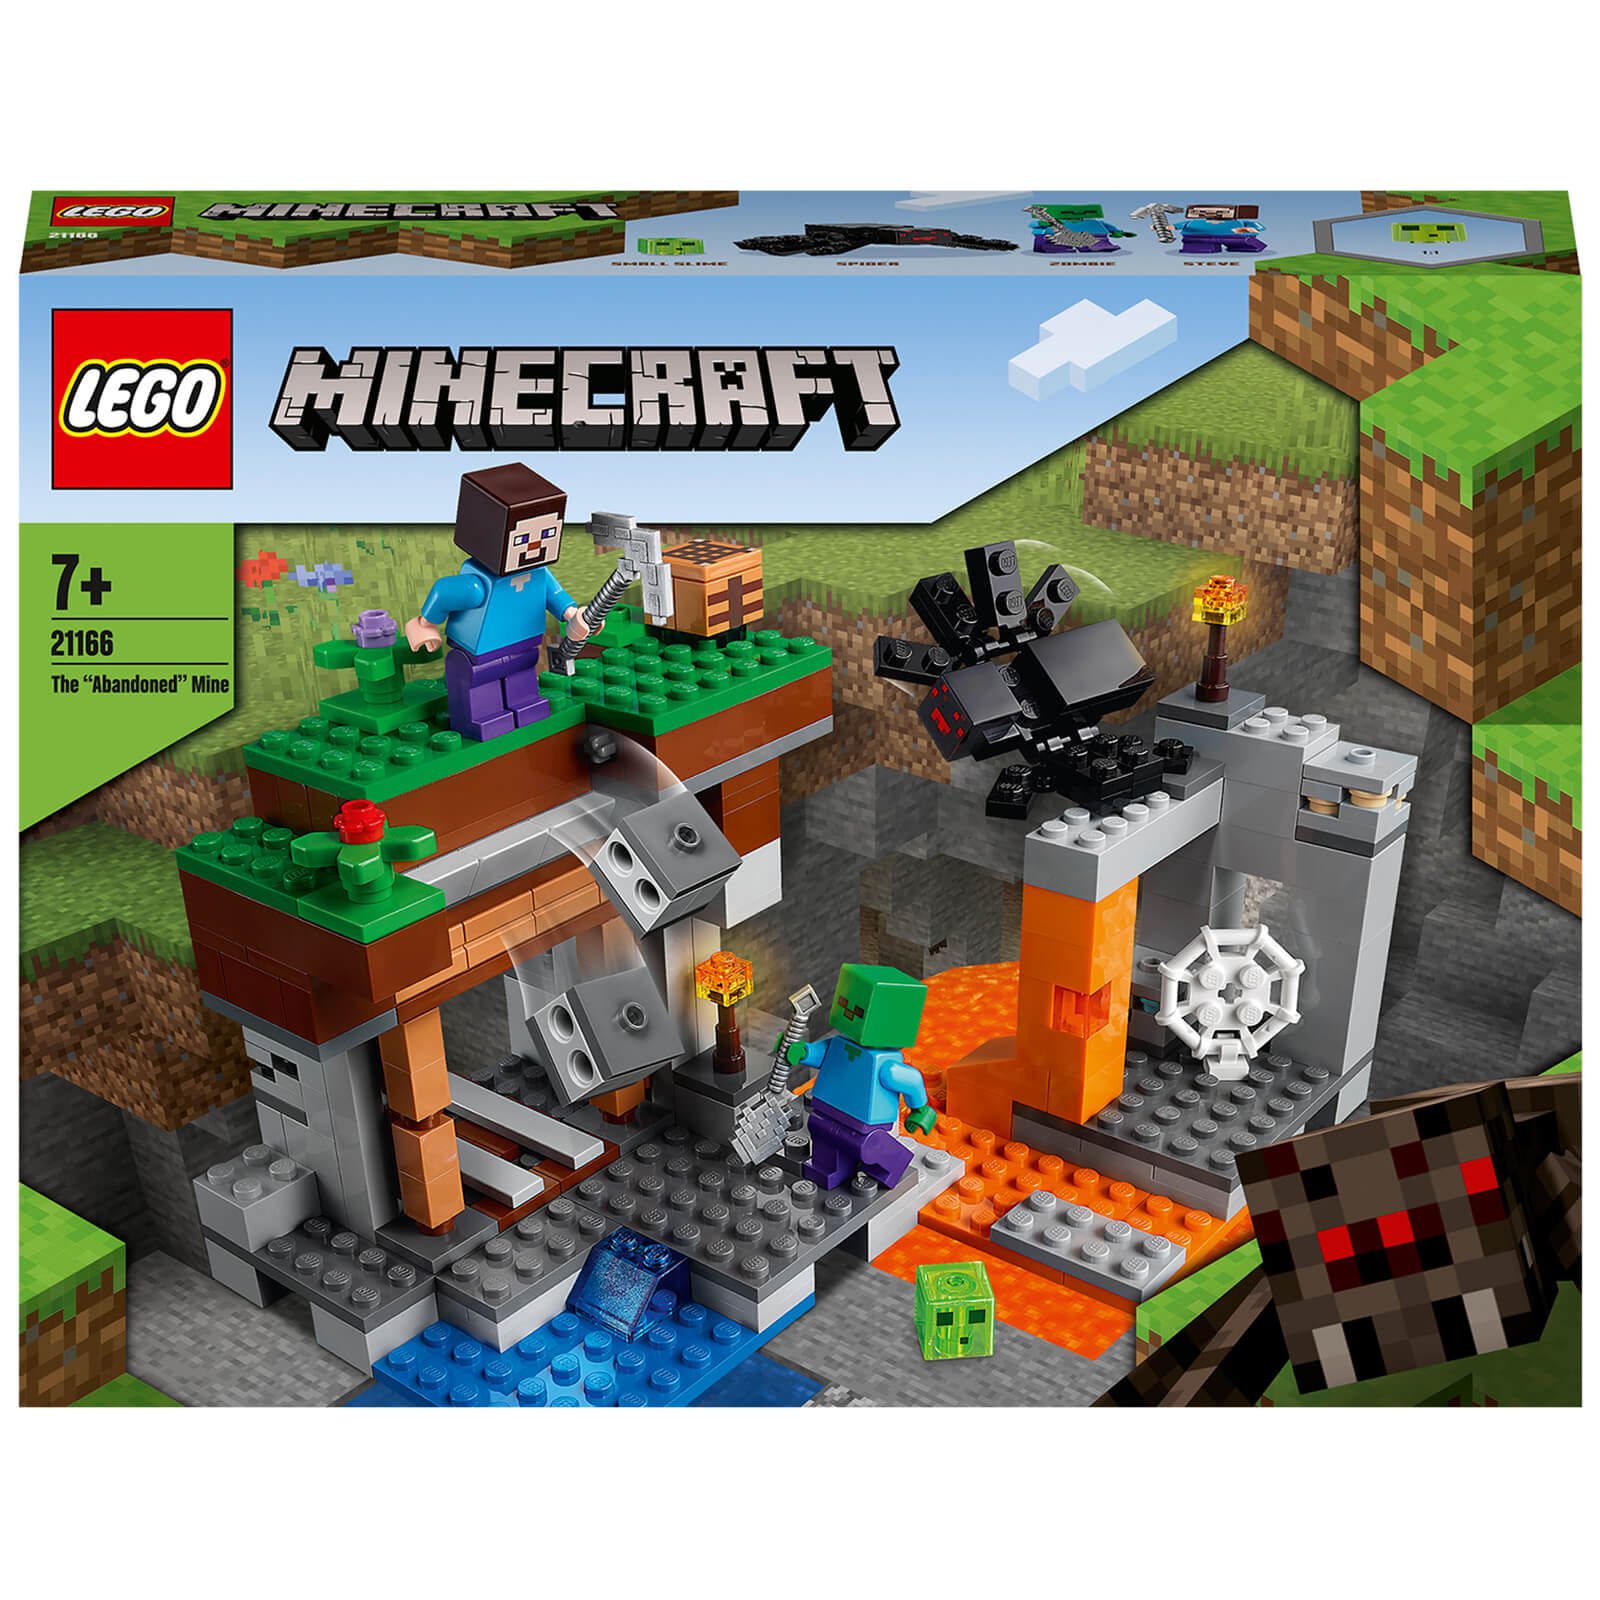 LEGO Minecraft: The Abandoned Mine Building Set (21166)